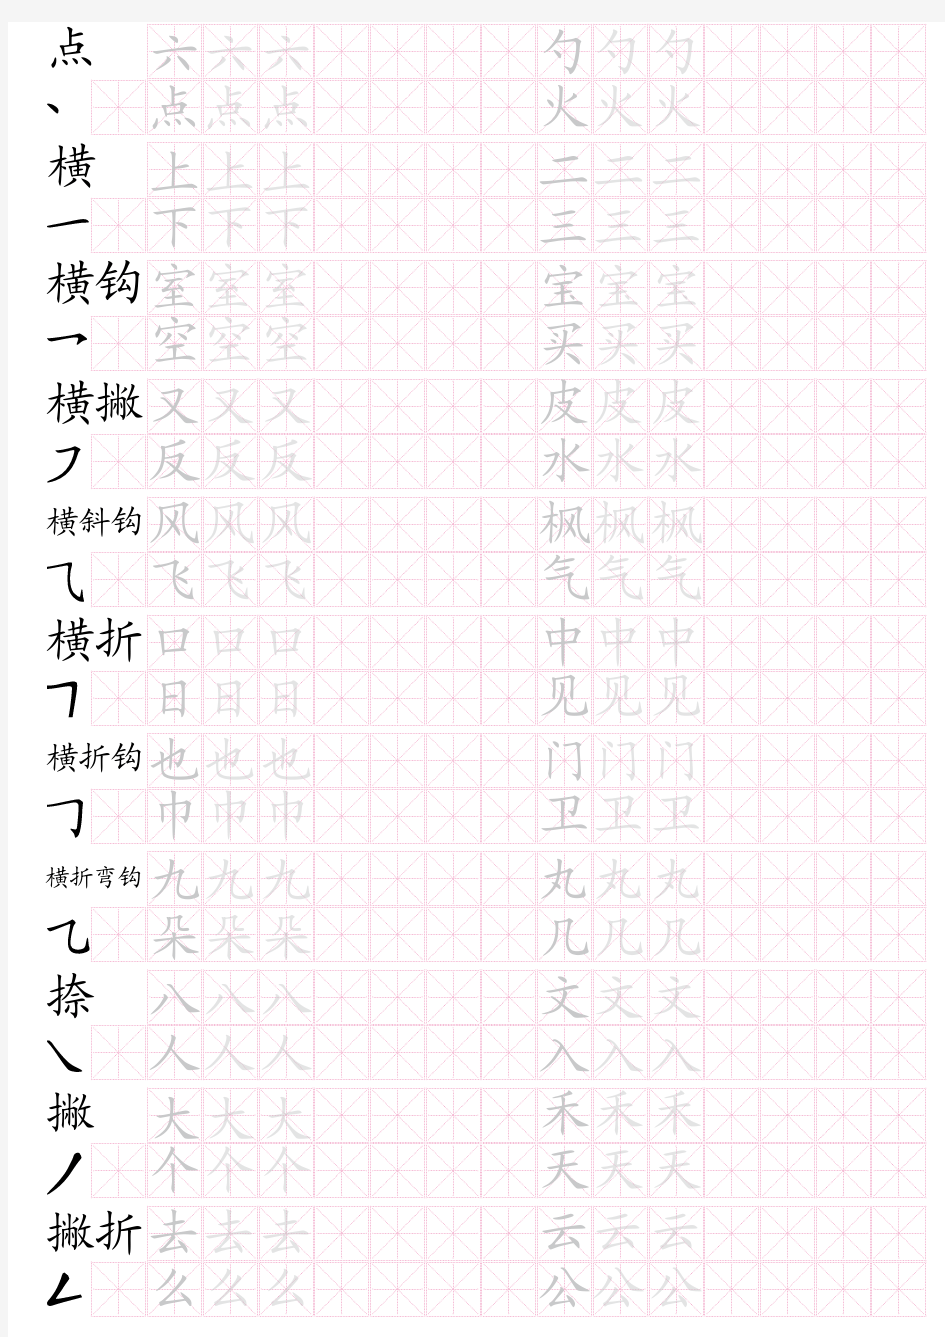 基本笔划名称+汉字描红米字格